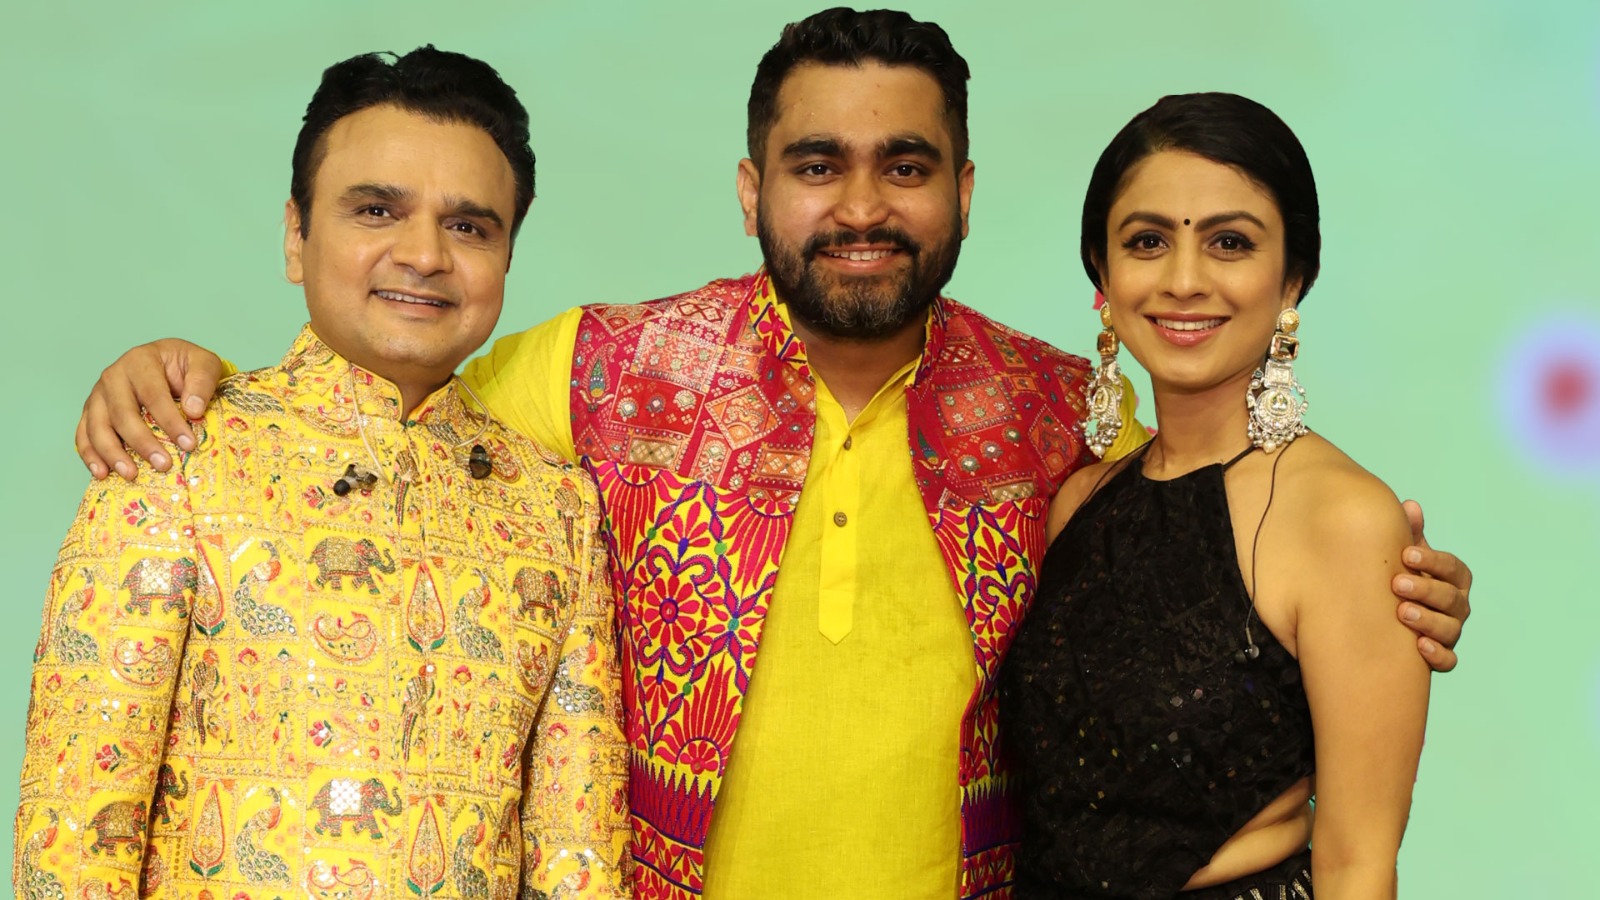 Trio of Talent- Viraj Ghelani, Manasi Parekh, and Parthiv Gohil